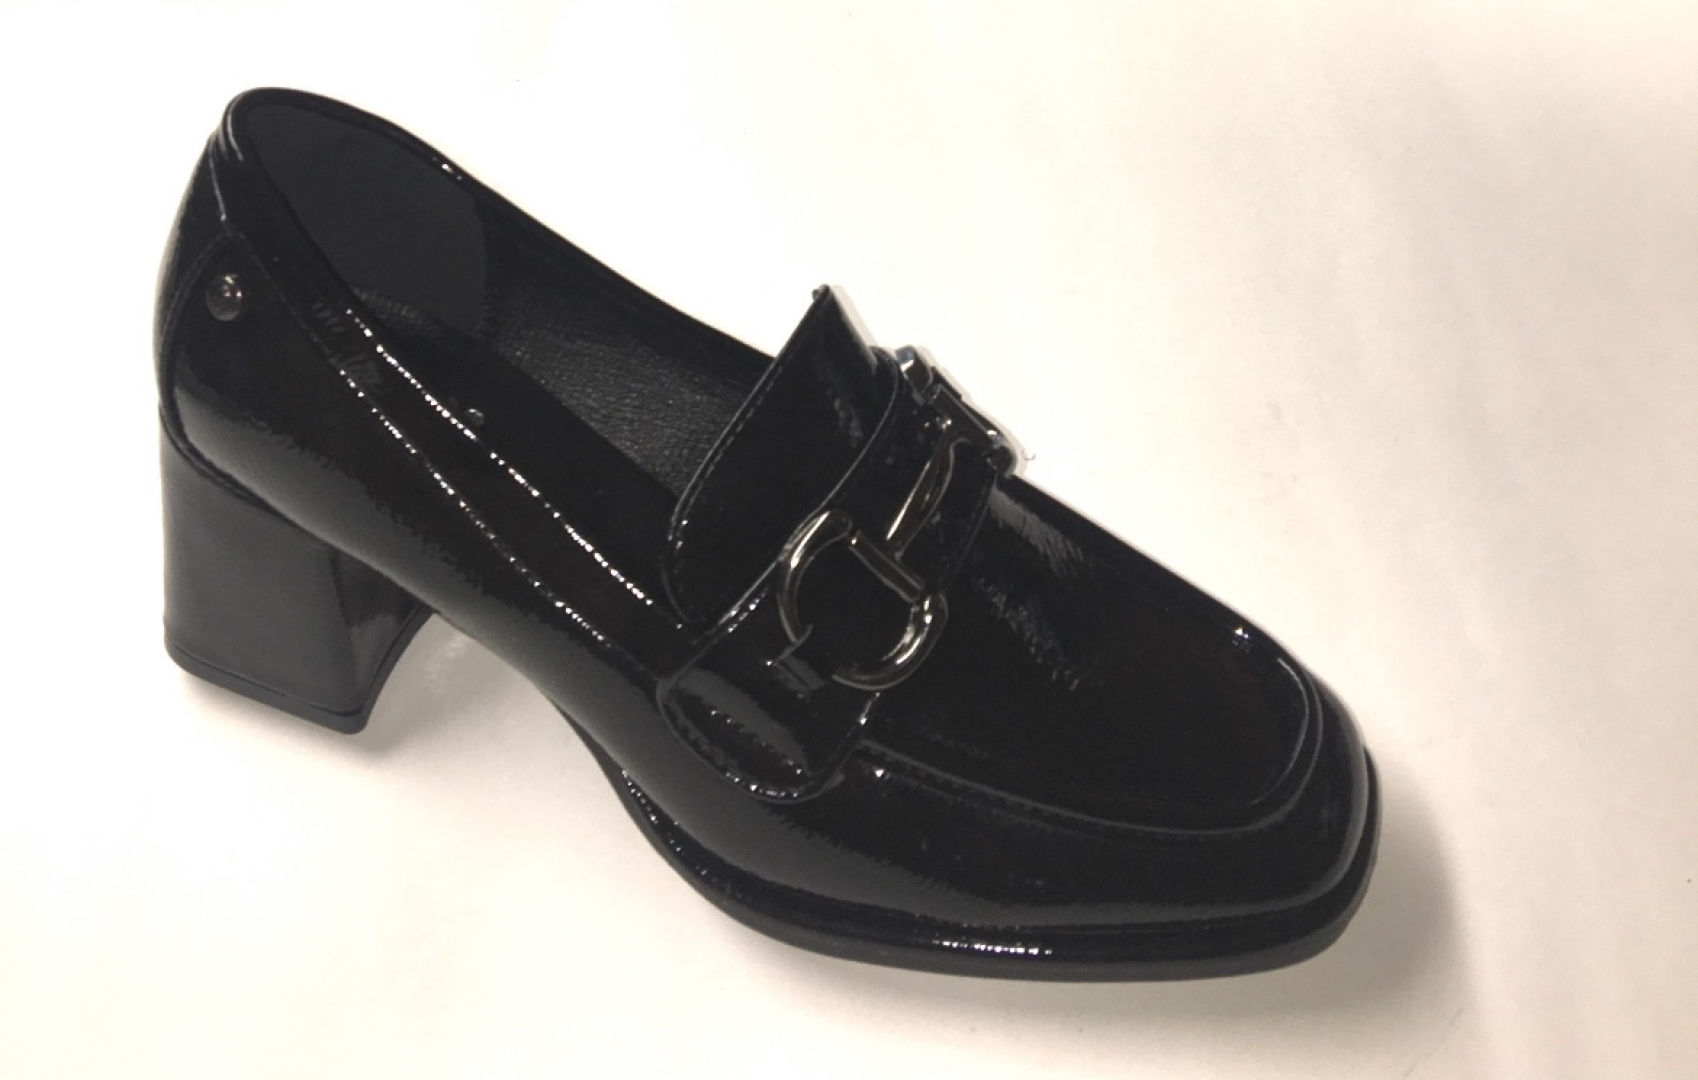 Zapato mocasín en charol negro para mujer de CALZAPIES. M-221